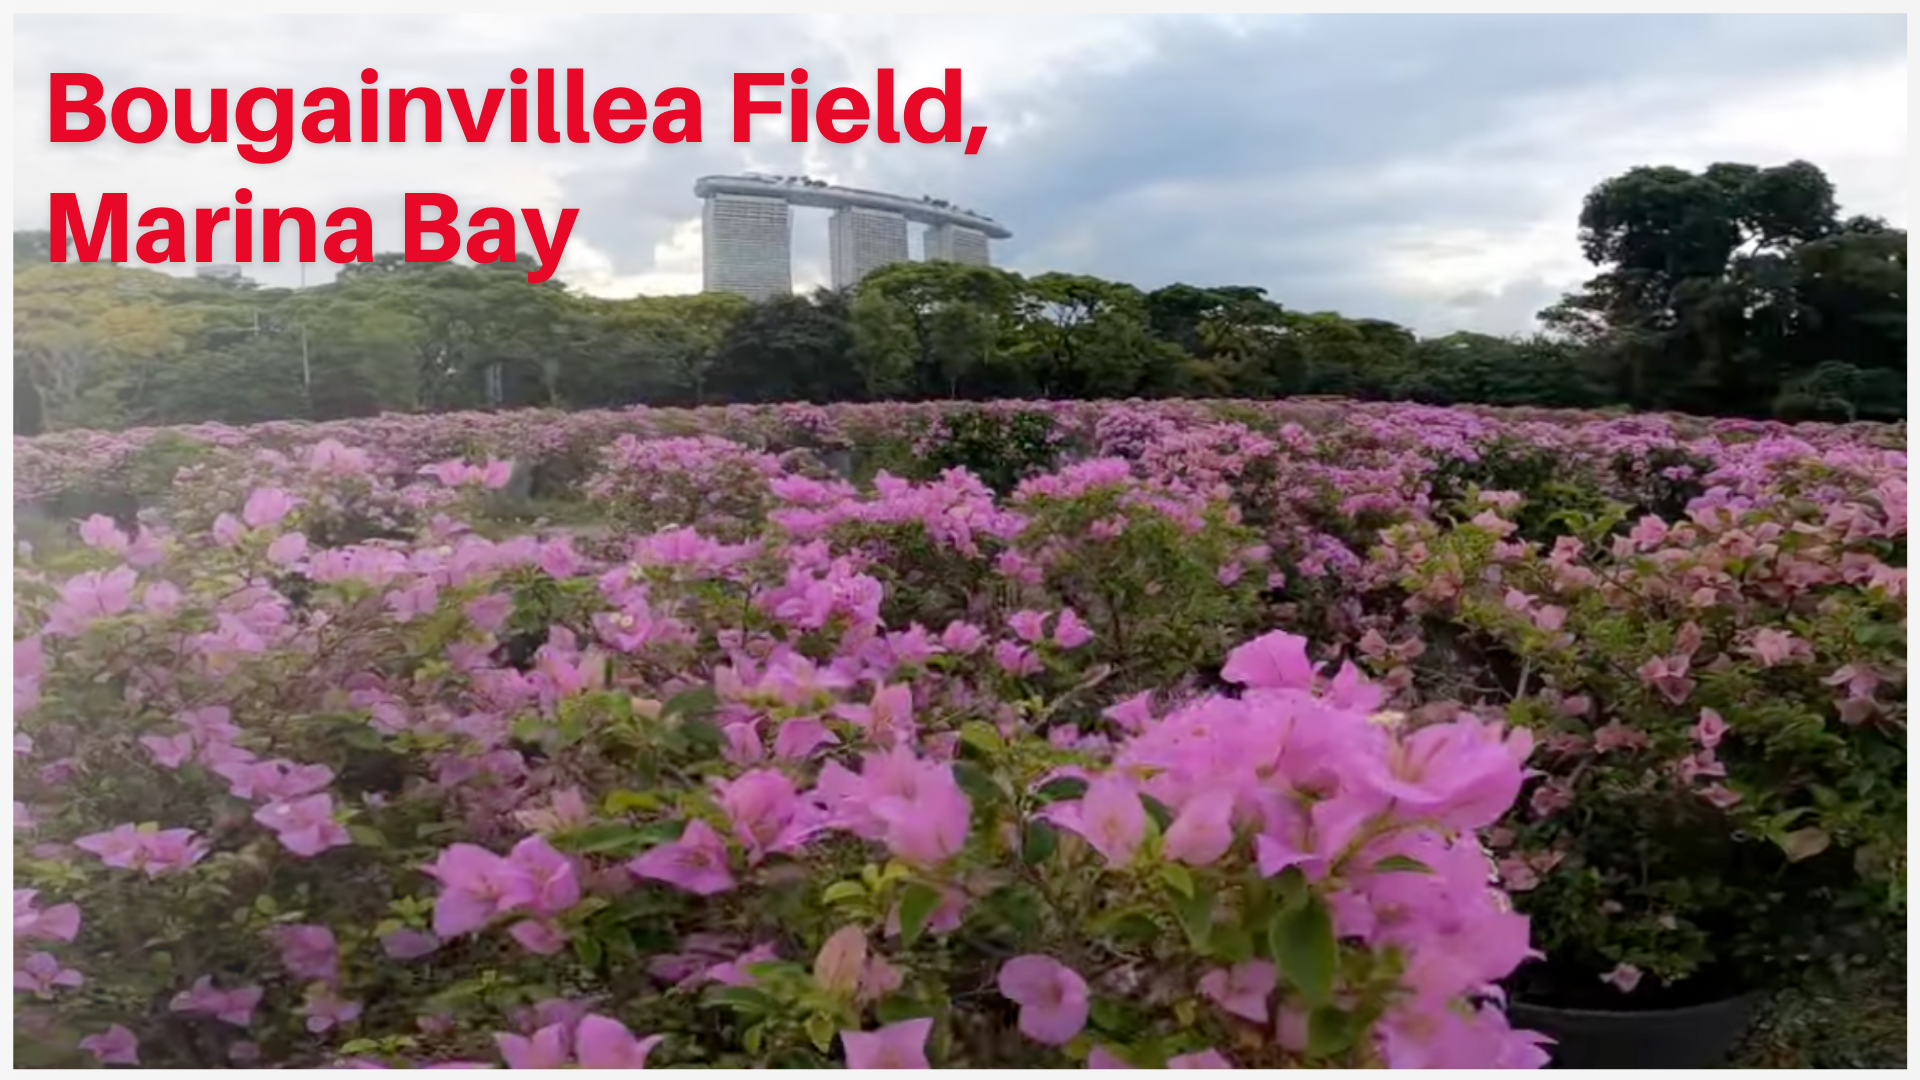 Bougainvillea Field at Marina Bay